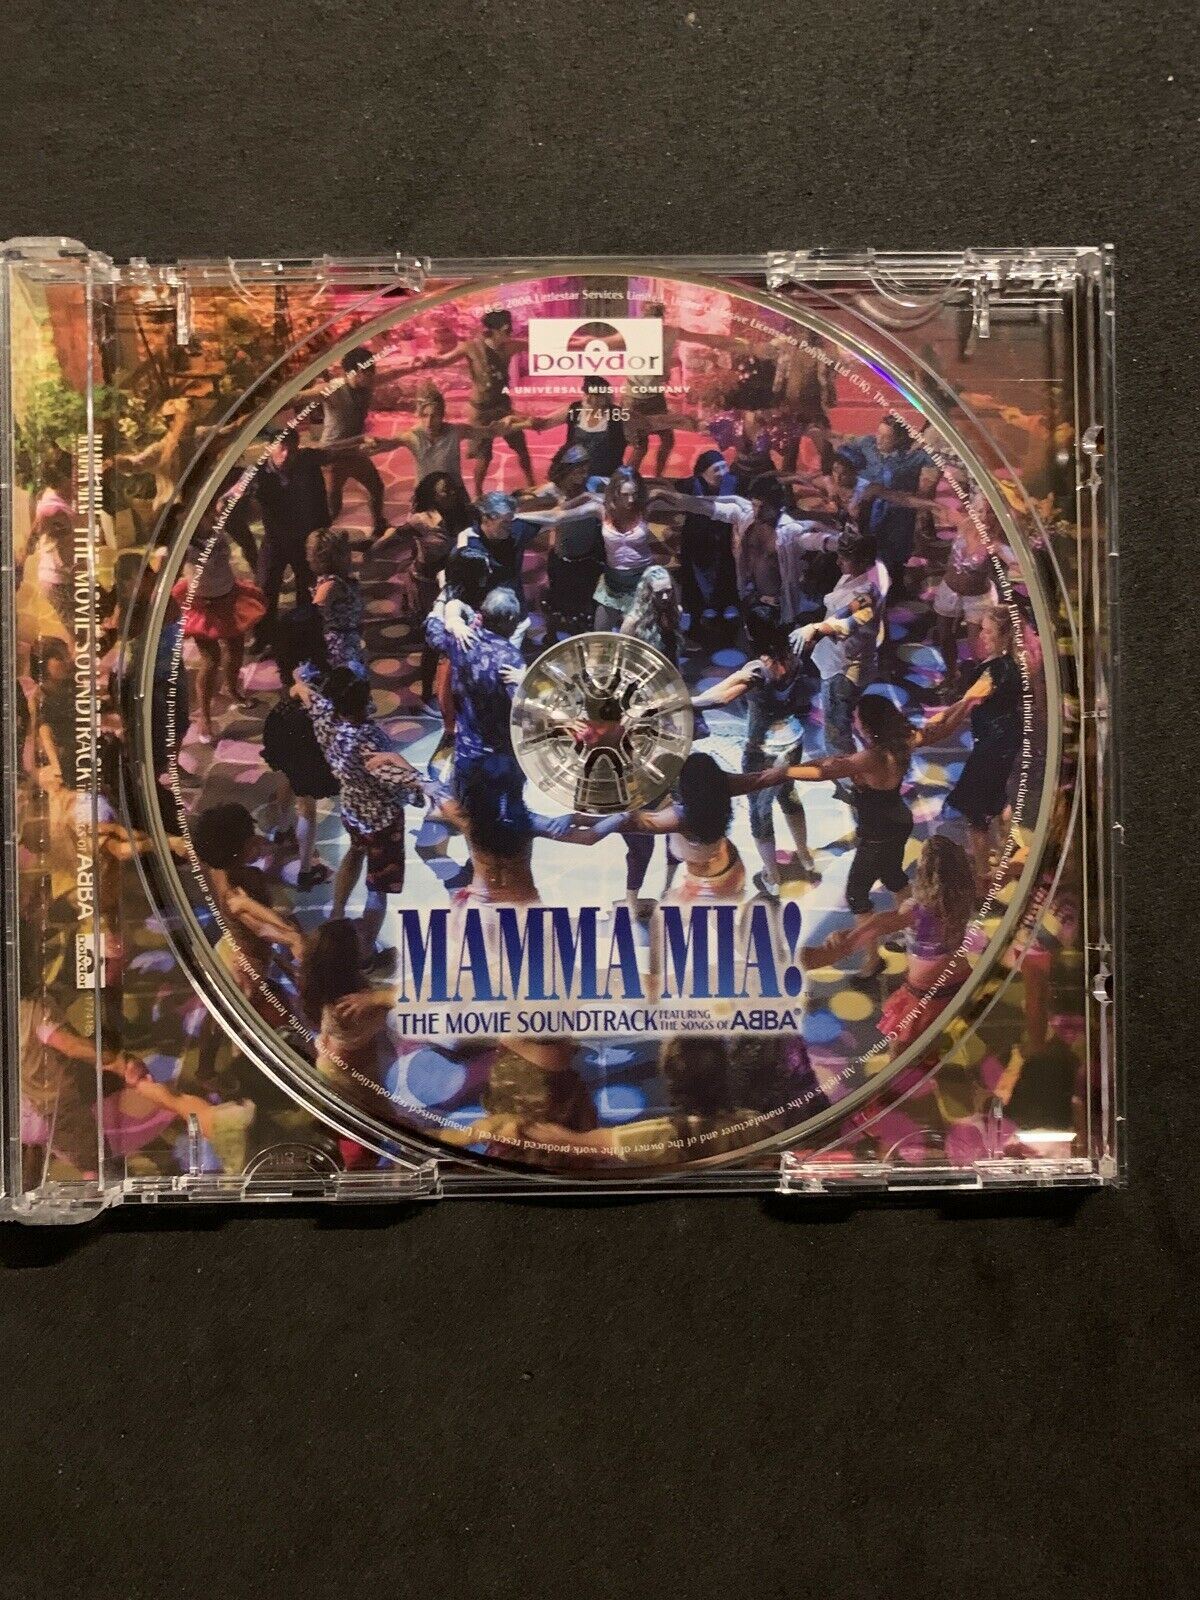 Mamma Mia! [Original Soundtrack] by Original Soundtrack (CD, Jul-2008, Decca)